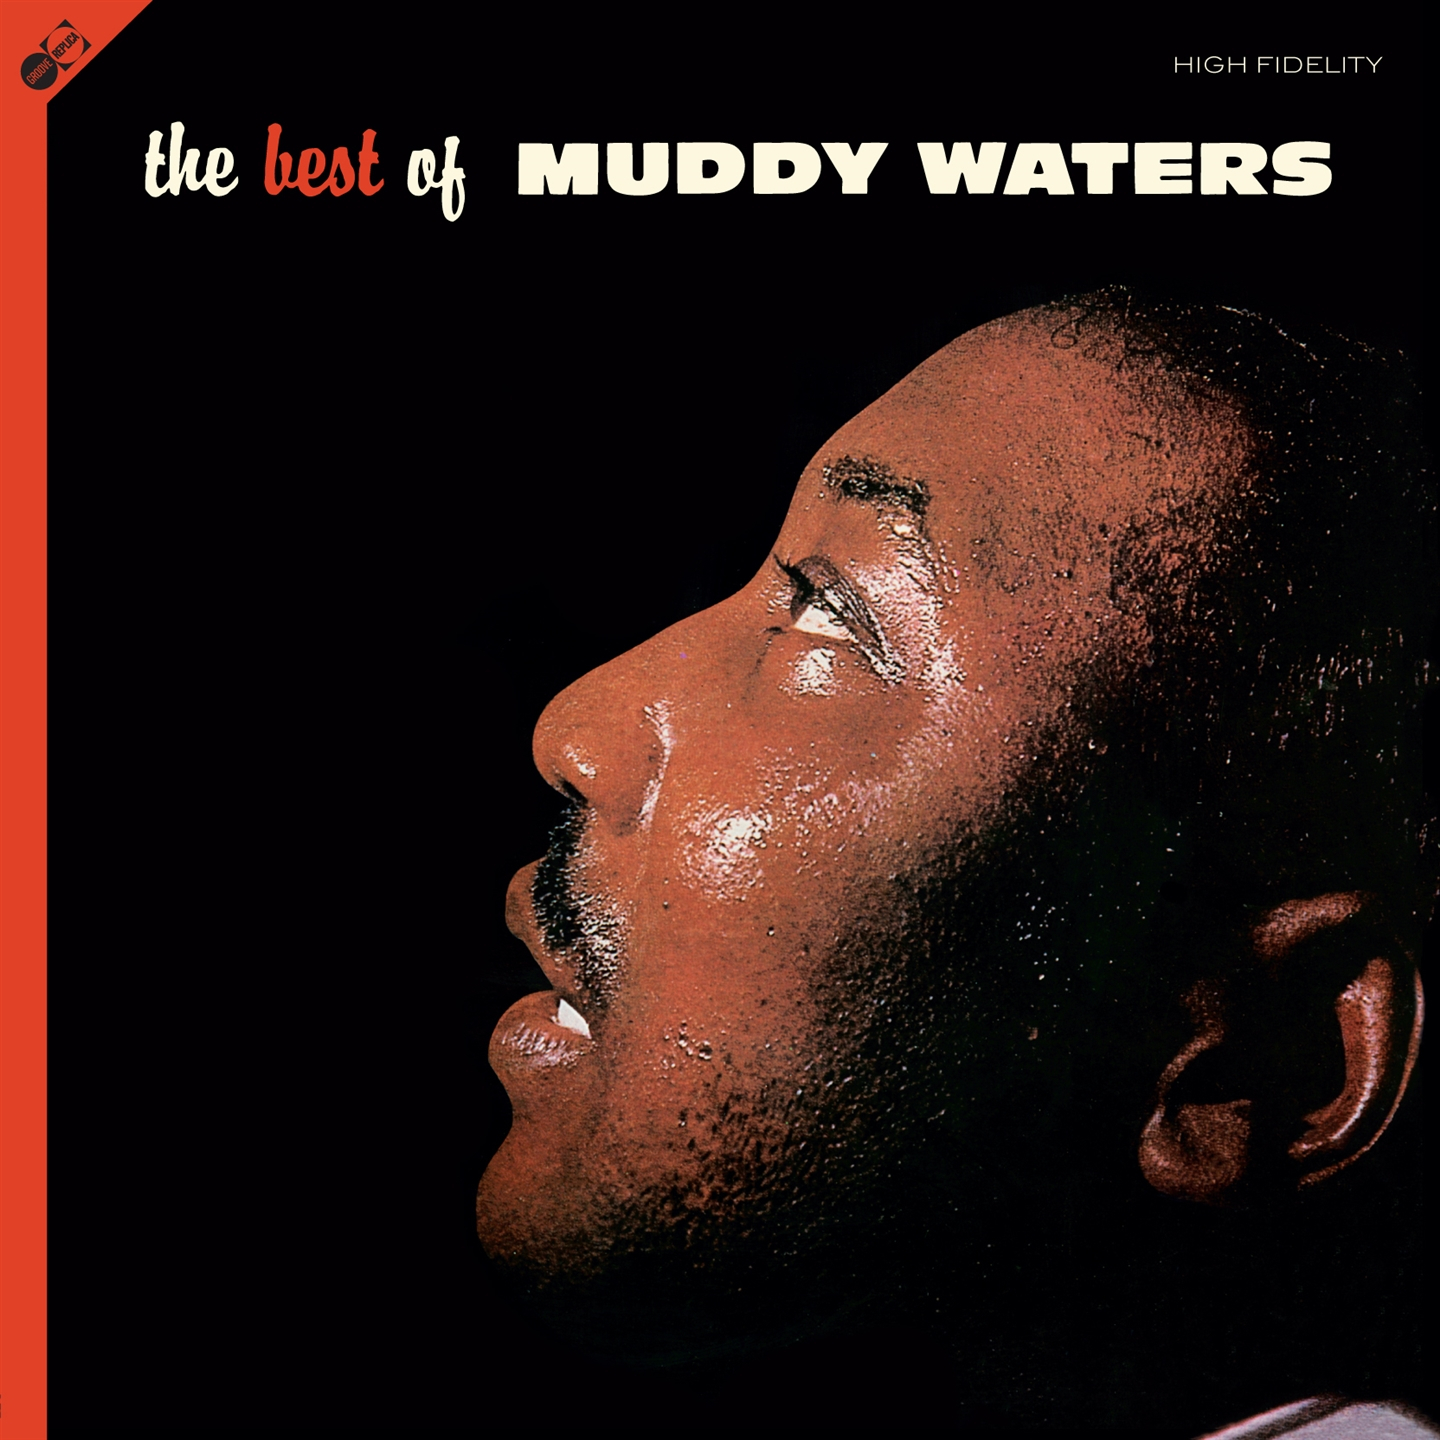 THE BEST OF MUDDY WATERS [LP + BONUS CD]